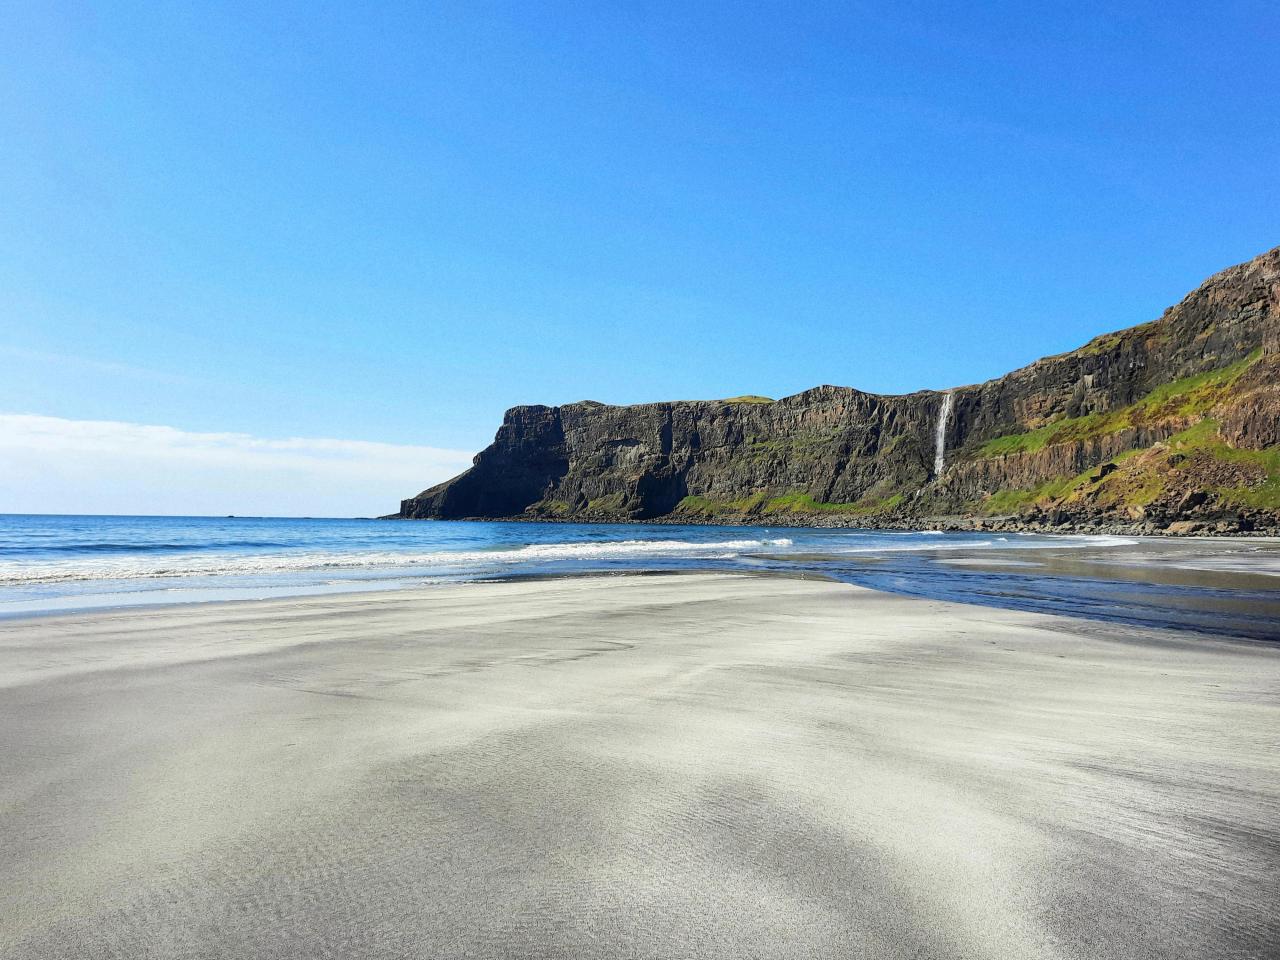 Talisker Bay, Isle of Skye, Scotland. [OC] [4000x3000] - Author: I_am_person6969 on reddit #nature#travel#landscape#amazing#beautiful